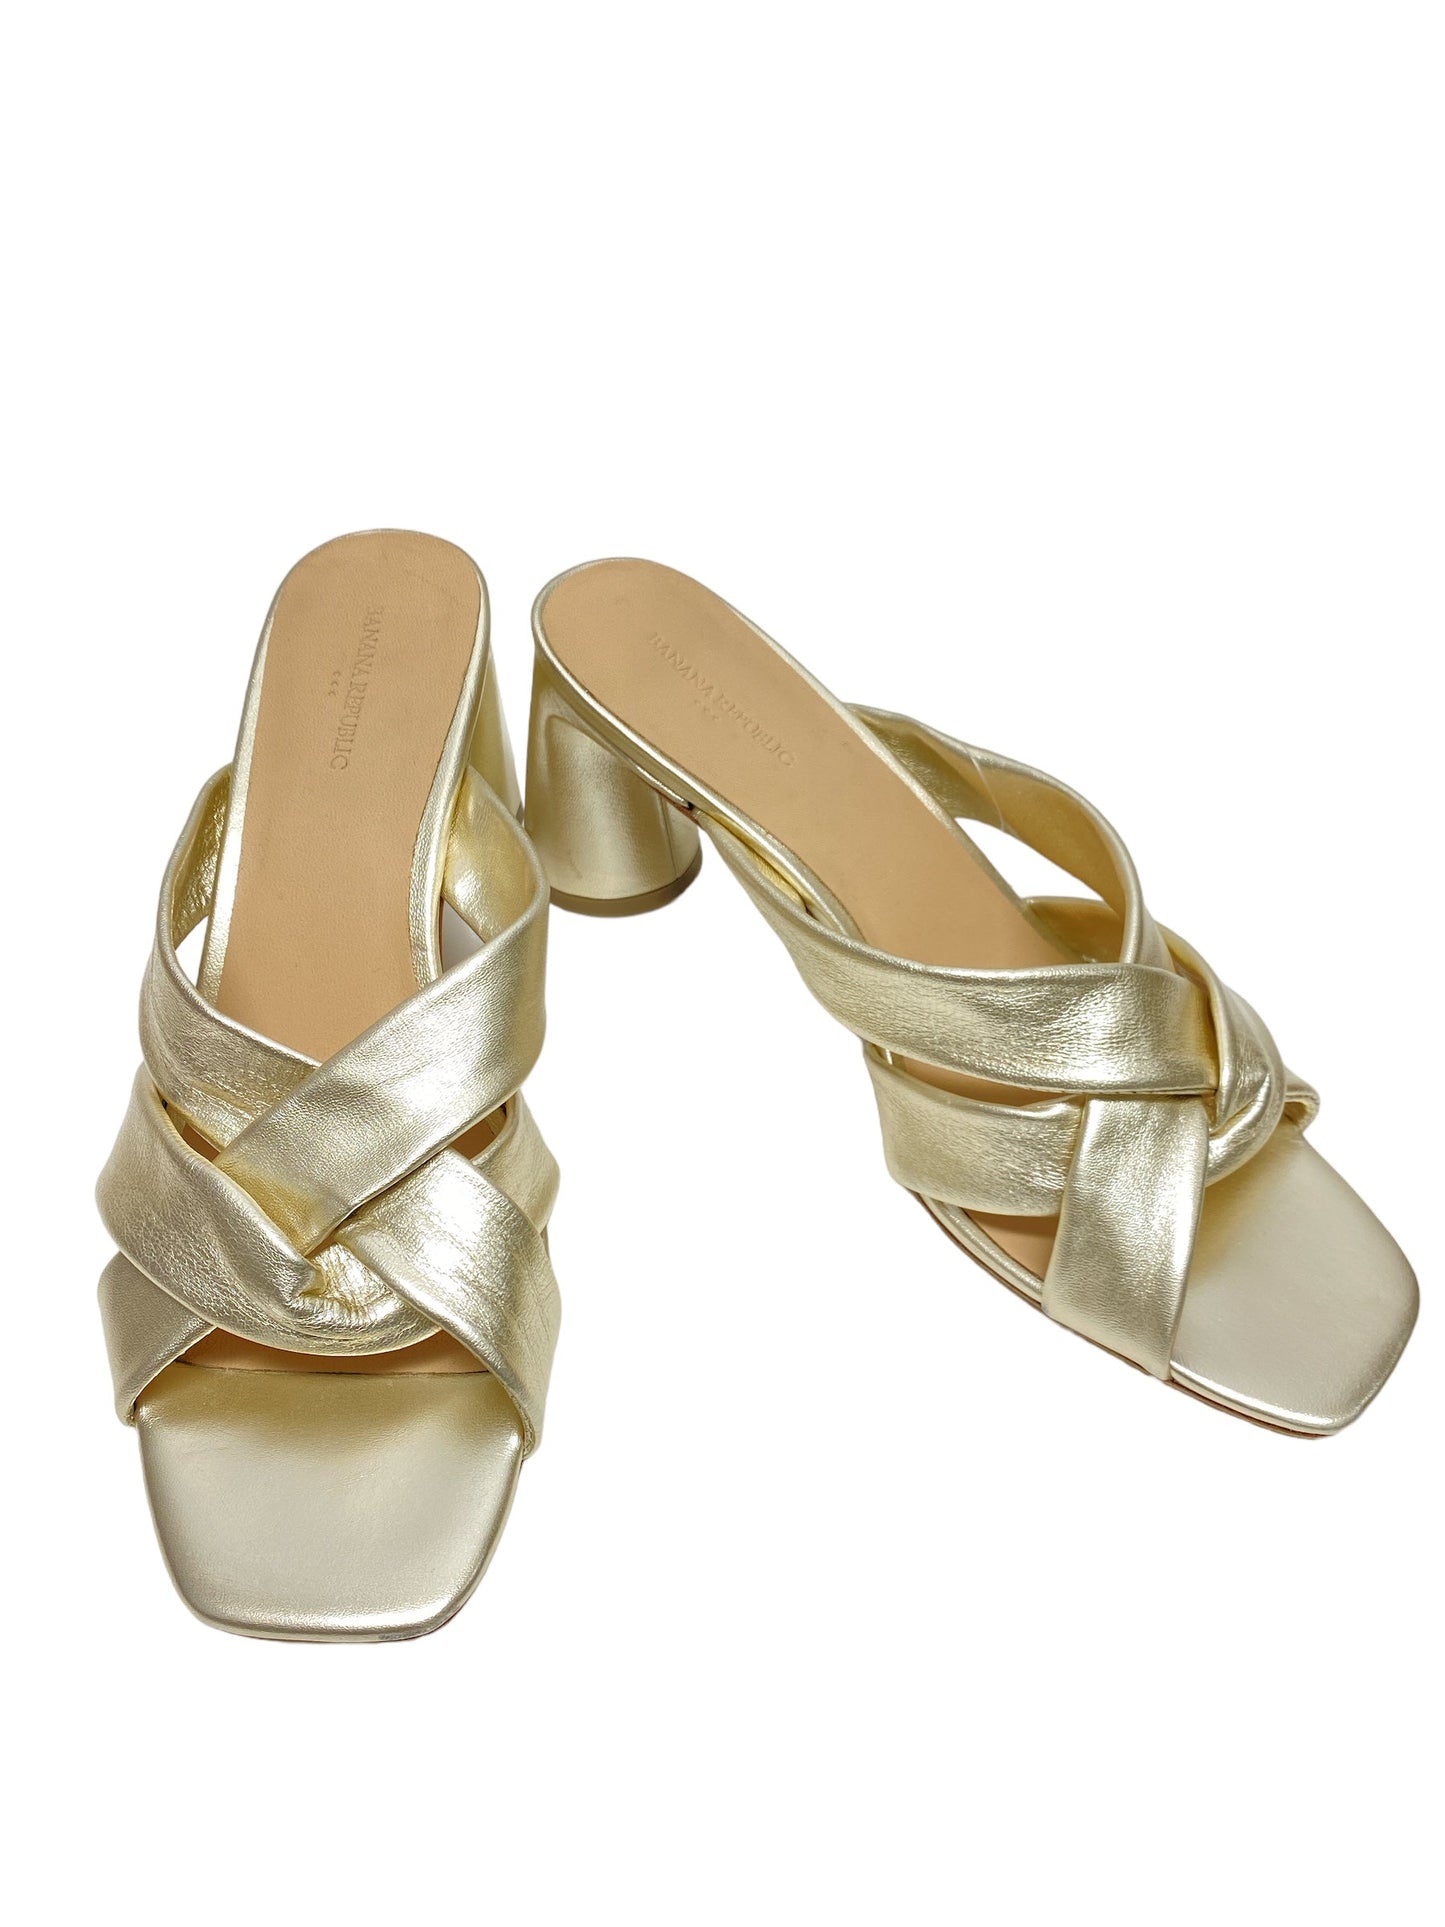 Gold Sandals Heels Block Banana Republic, Size 8.5